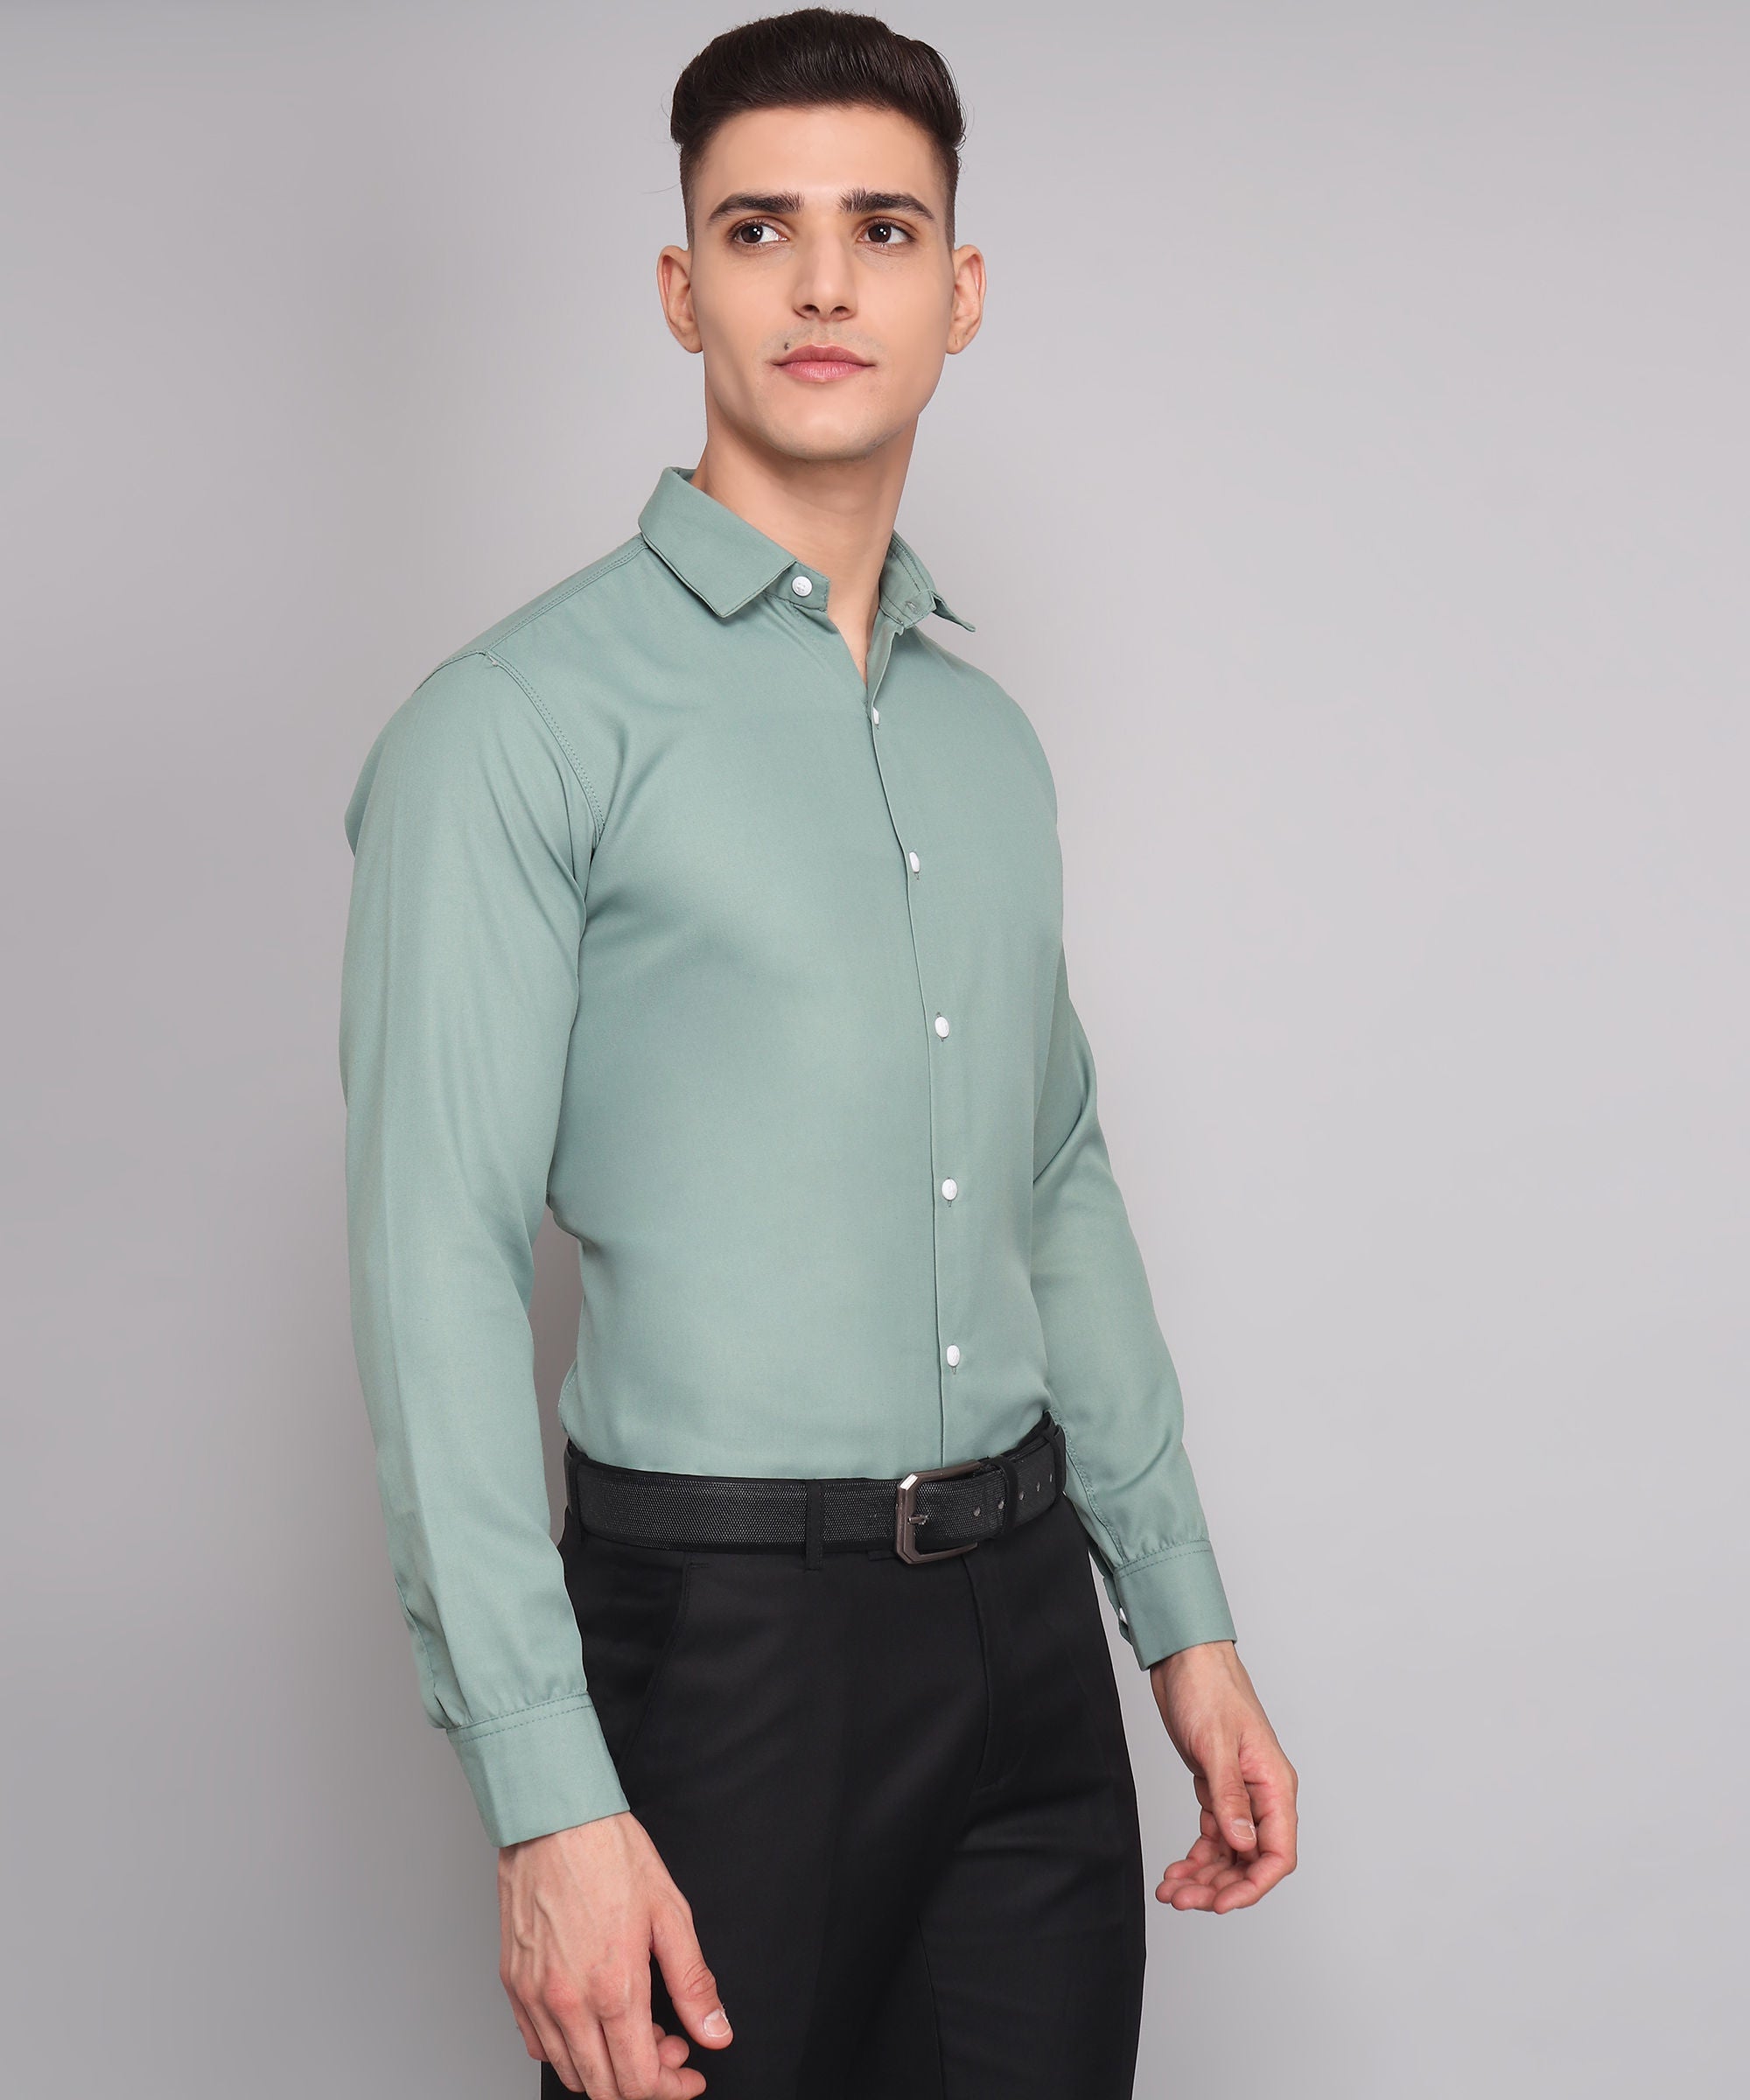 Exclusive TryBuy Premium Ocean Green Dress Shirt for Men